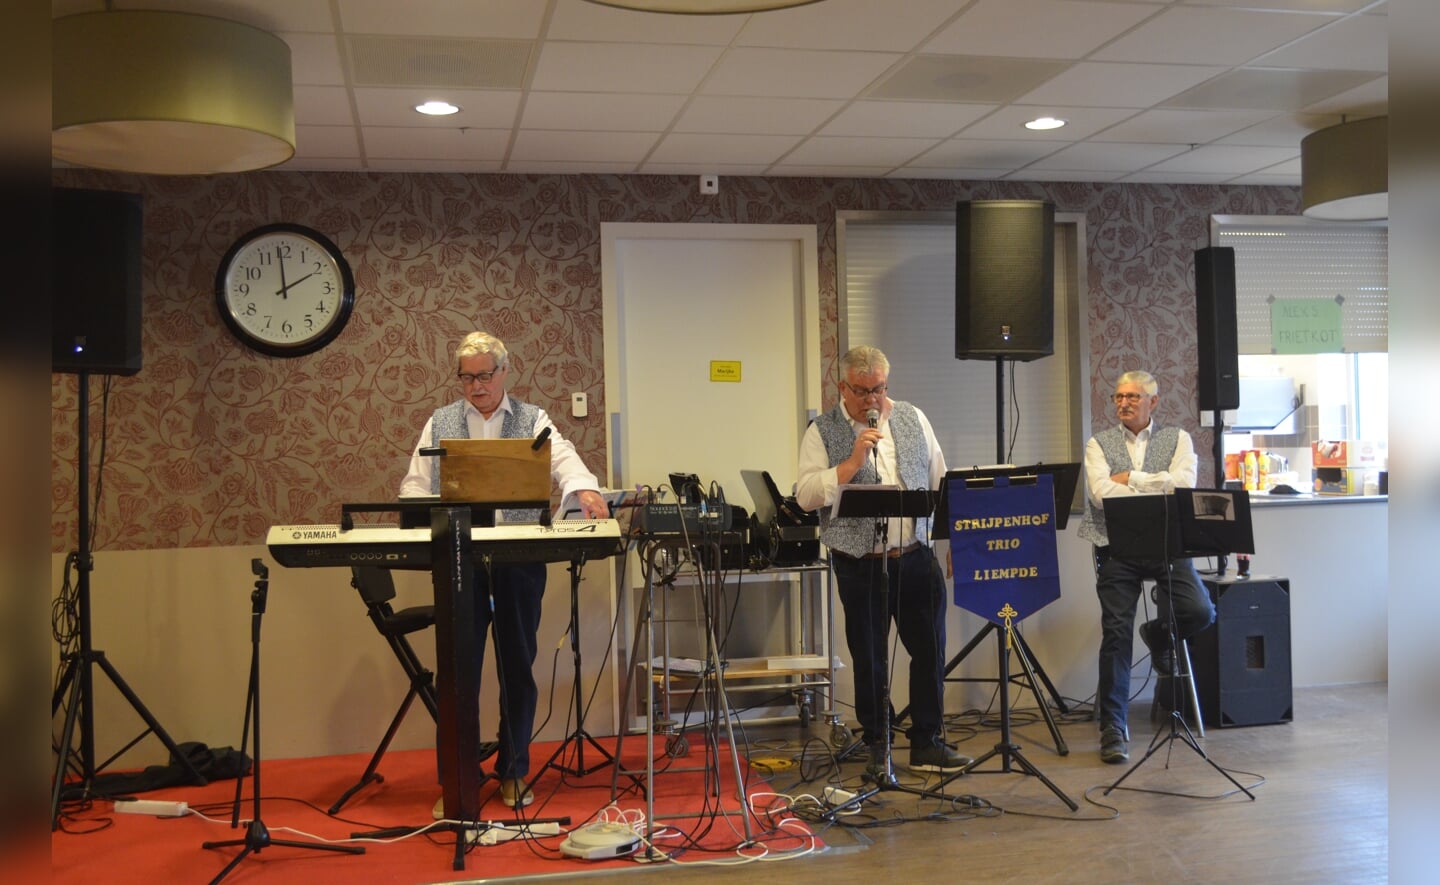 De muziekmiddag in Elisabethsdael was zondagmiddag een groot succes met een optreden het Strijpenhof Trio uit Liempde en zanger Salim Segers uit België. Met 150 bezoekers was het een uitverkocht huis. Wim van de Langenberg was de organisator van de middag en zag dat de activiteit voor herhaling vatbaar was. 